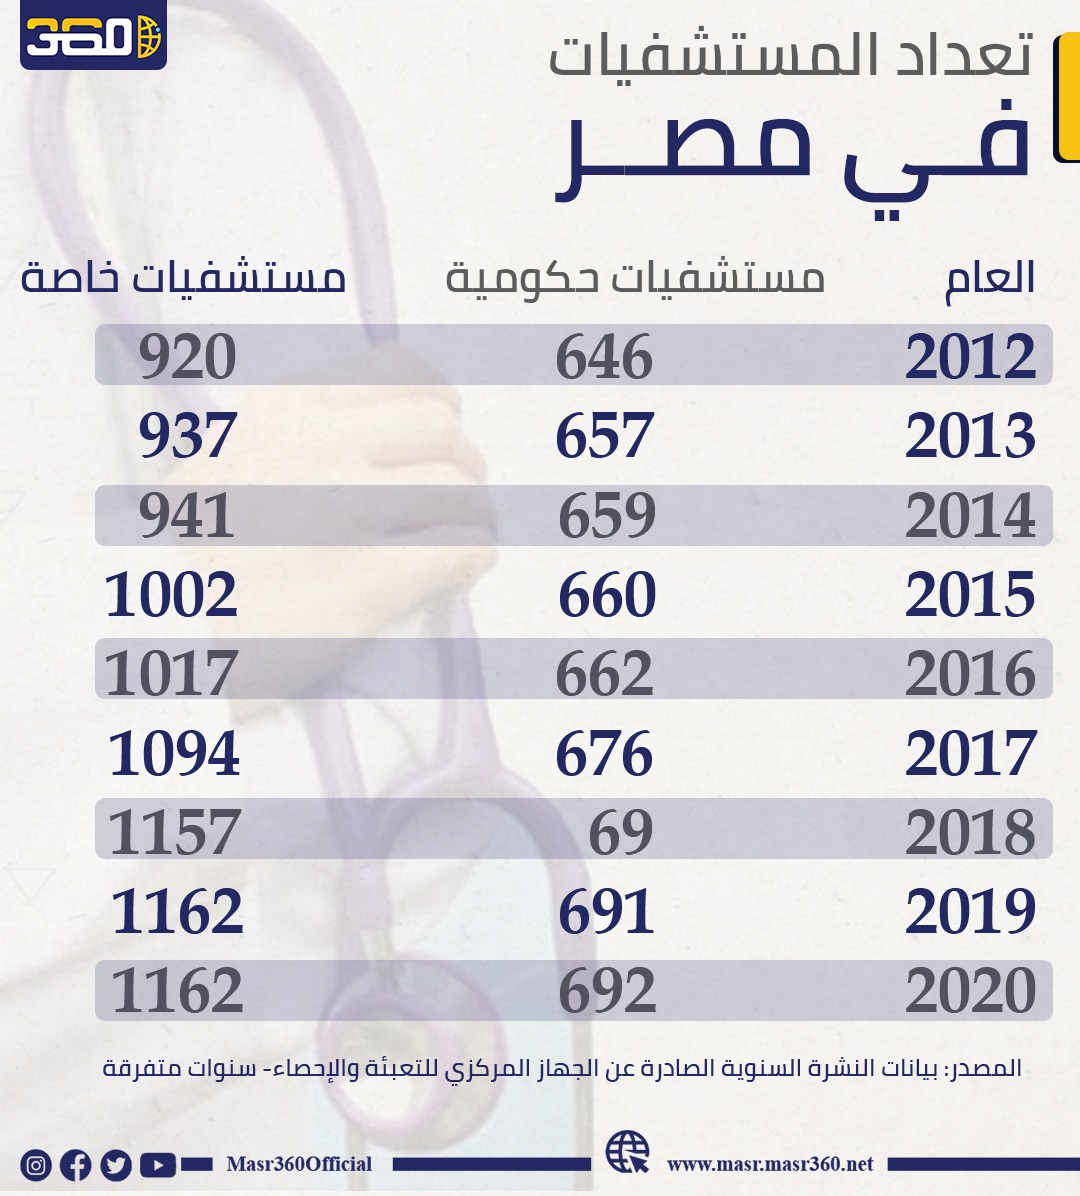 تعداد المستشفيات في مصر